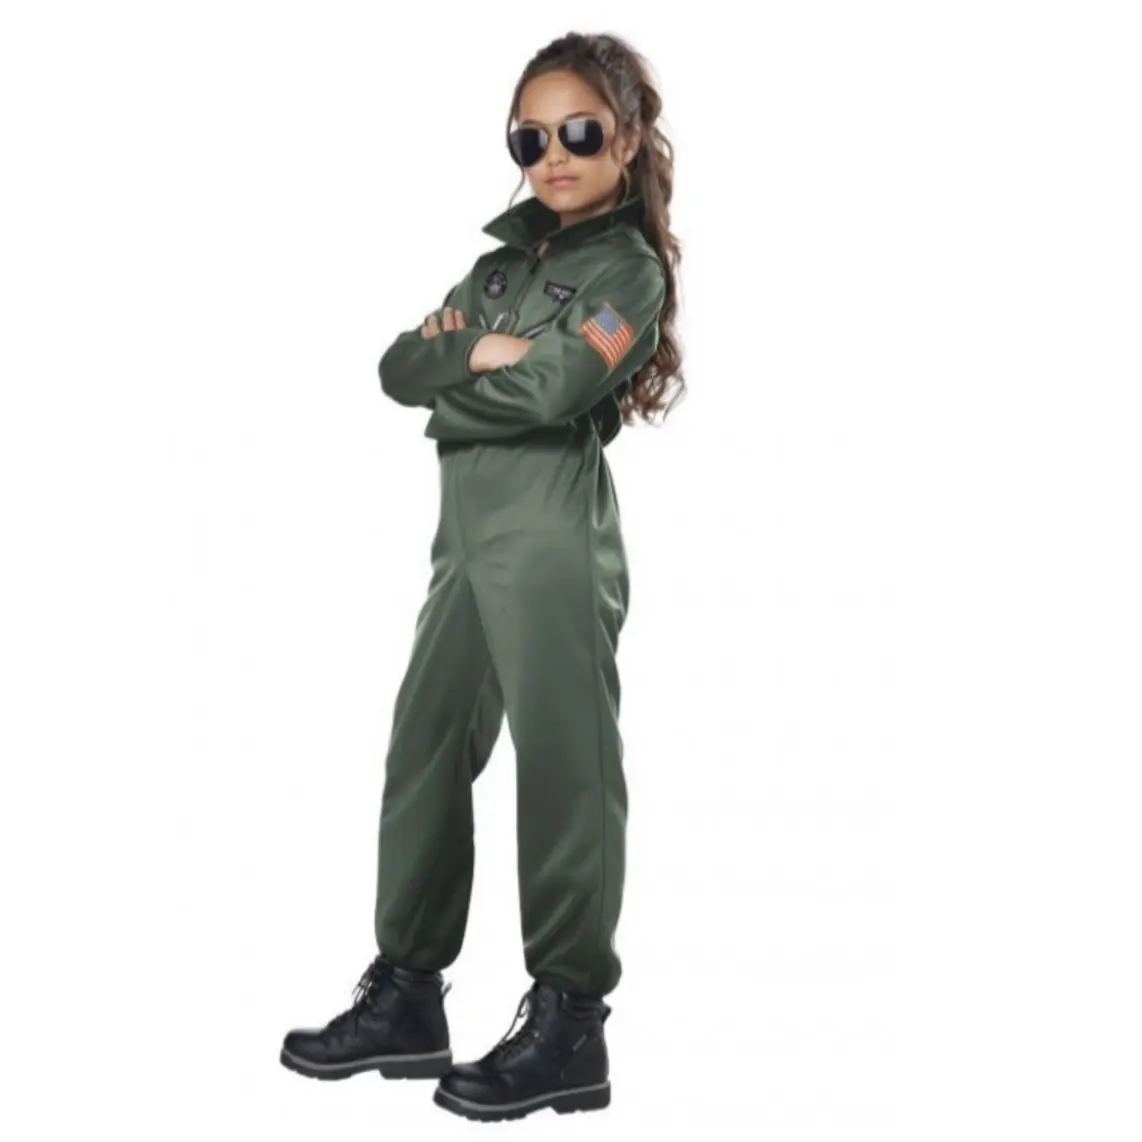 2022 Novo Aviador Flightsuit Air Cadet Uniforme Militar Fighter Pilot Halloween Festa ou Carnaval Cosplay Trajes para Crianças